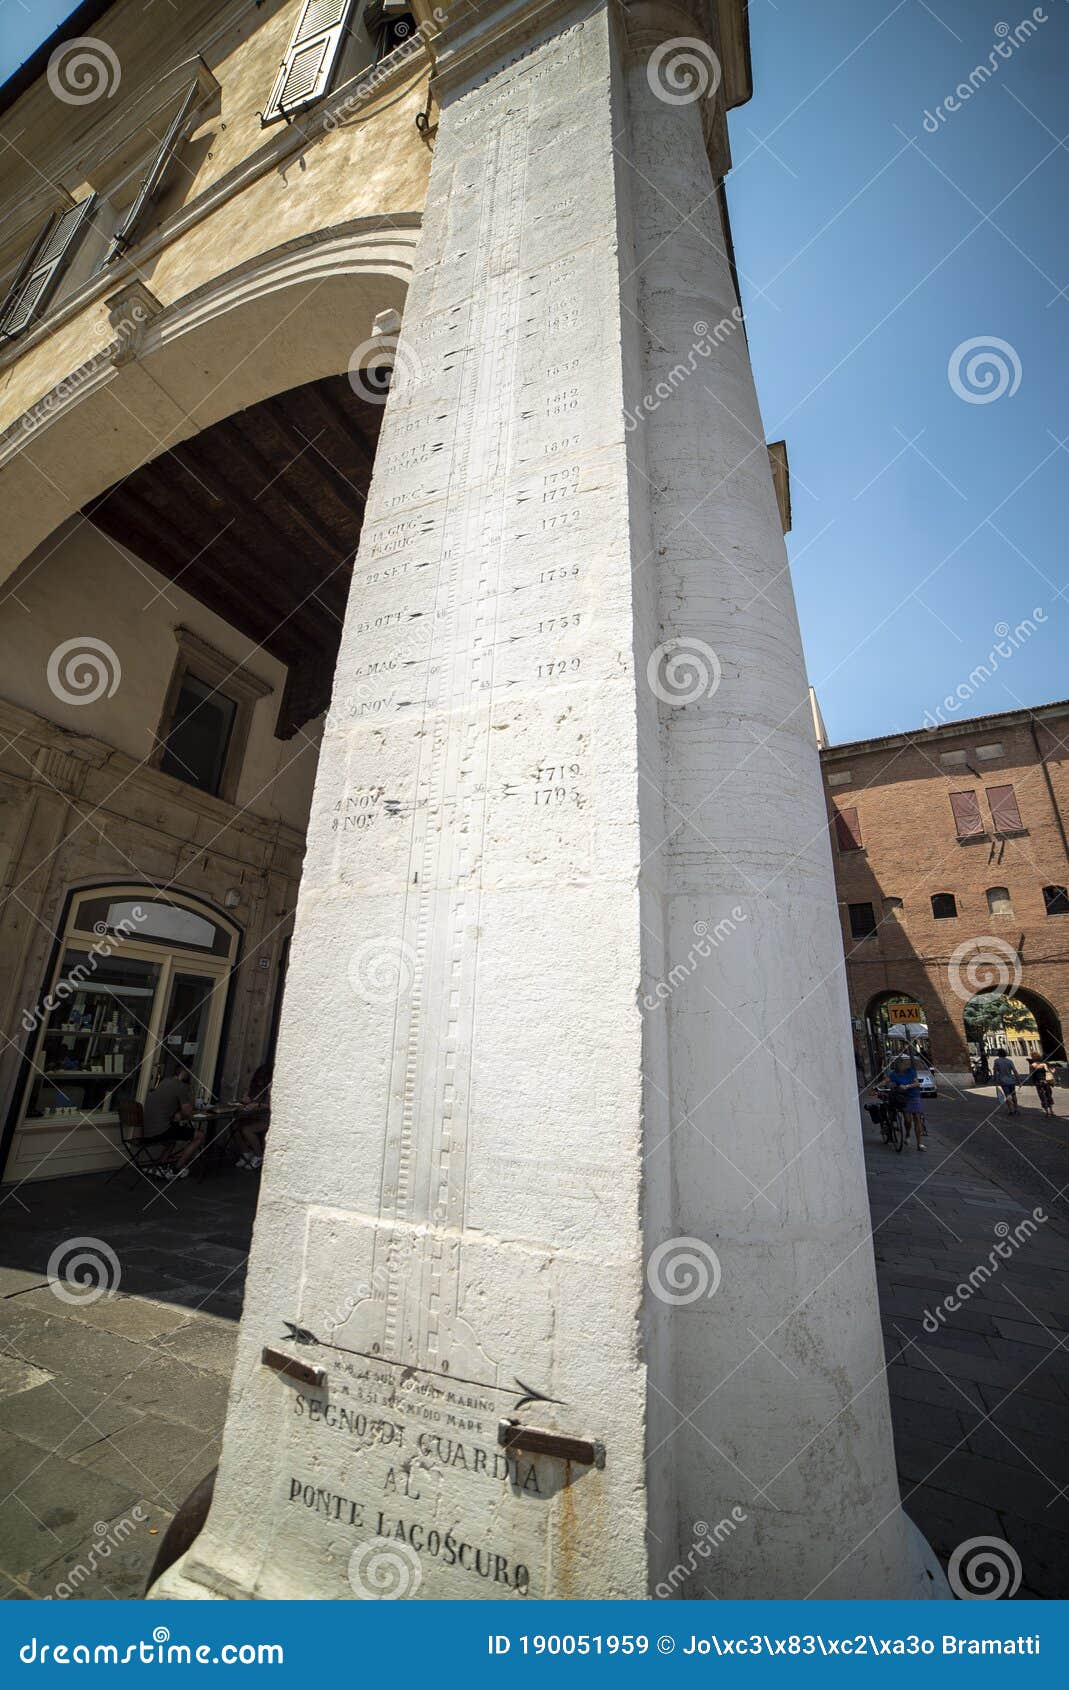 the view of the segno di guarda al ponte lagoscuro in the city of ferrara italy